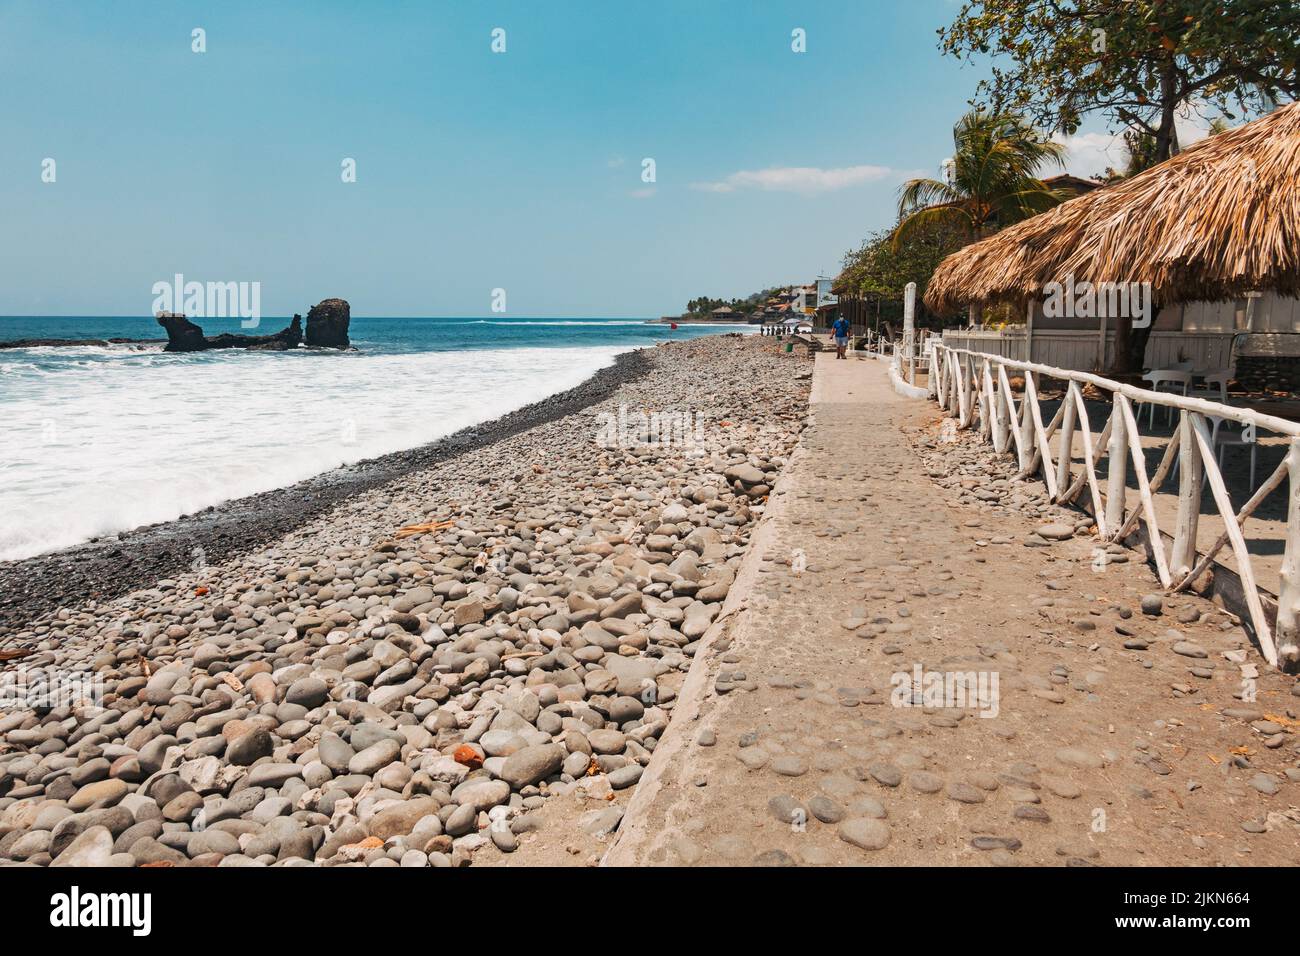 Las costas rocosas de la playa de El Tunco en la costa pacífica de El Salvador Foto de stock